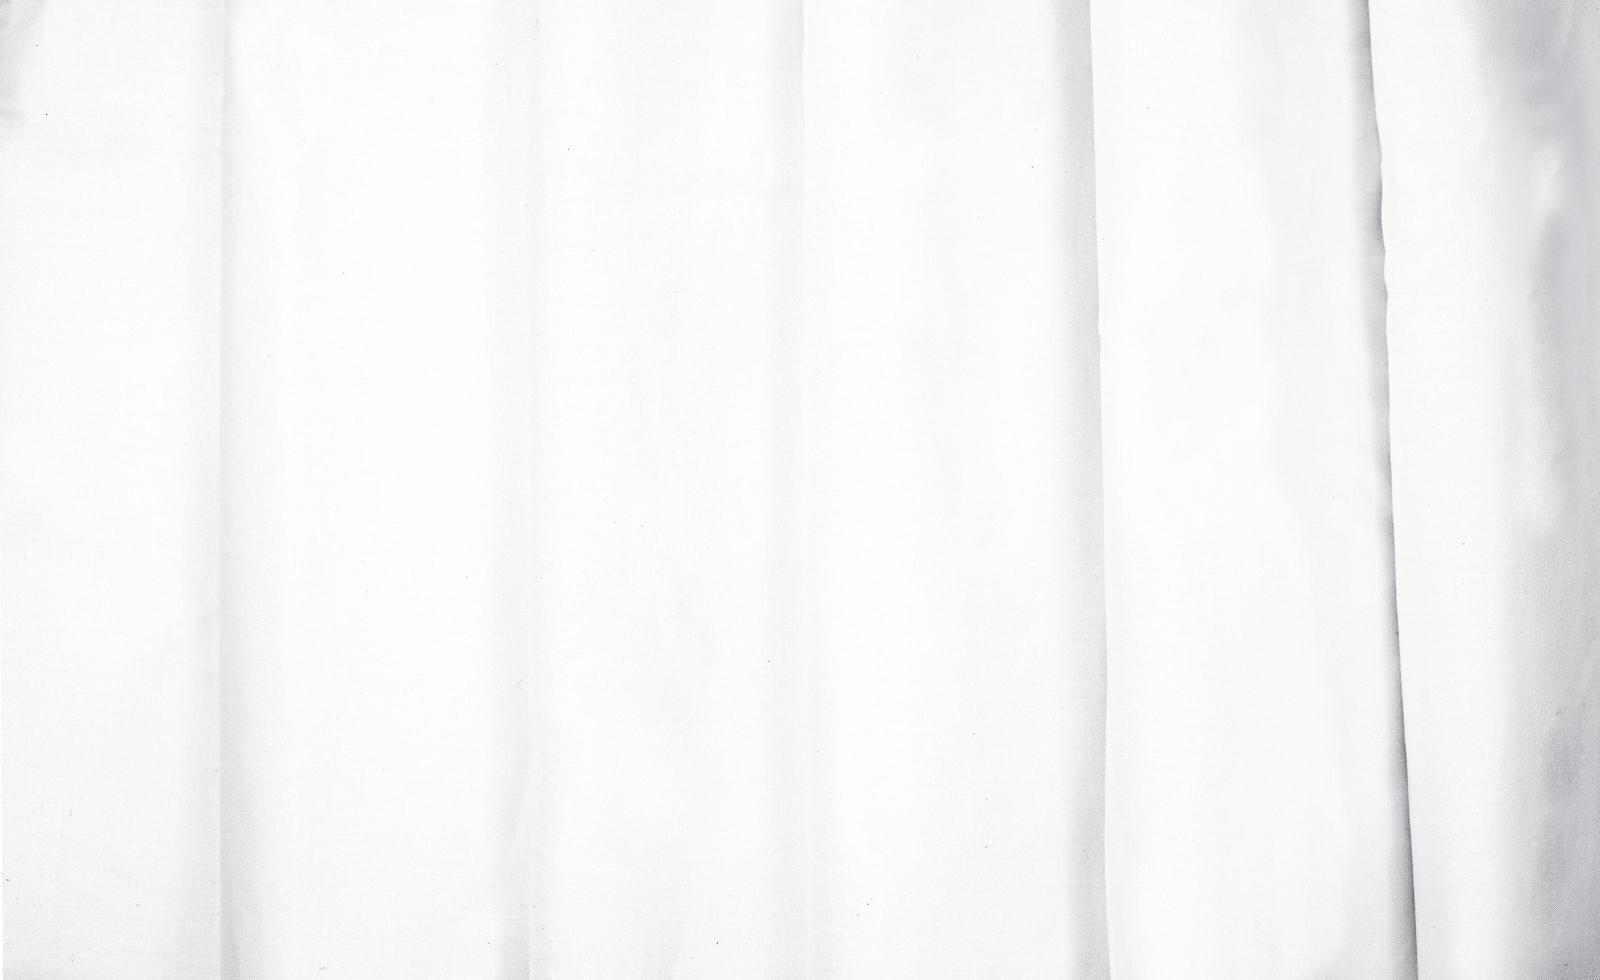 struttura del tessuto bianco piegata correttamente. concetto di tenda bianca sgualcita ordinata. mockup di texture tessili per l'anteprima del design creativo. foto